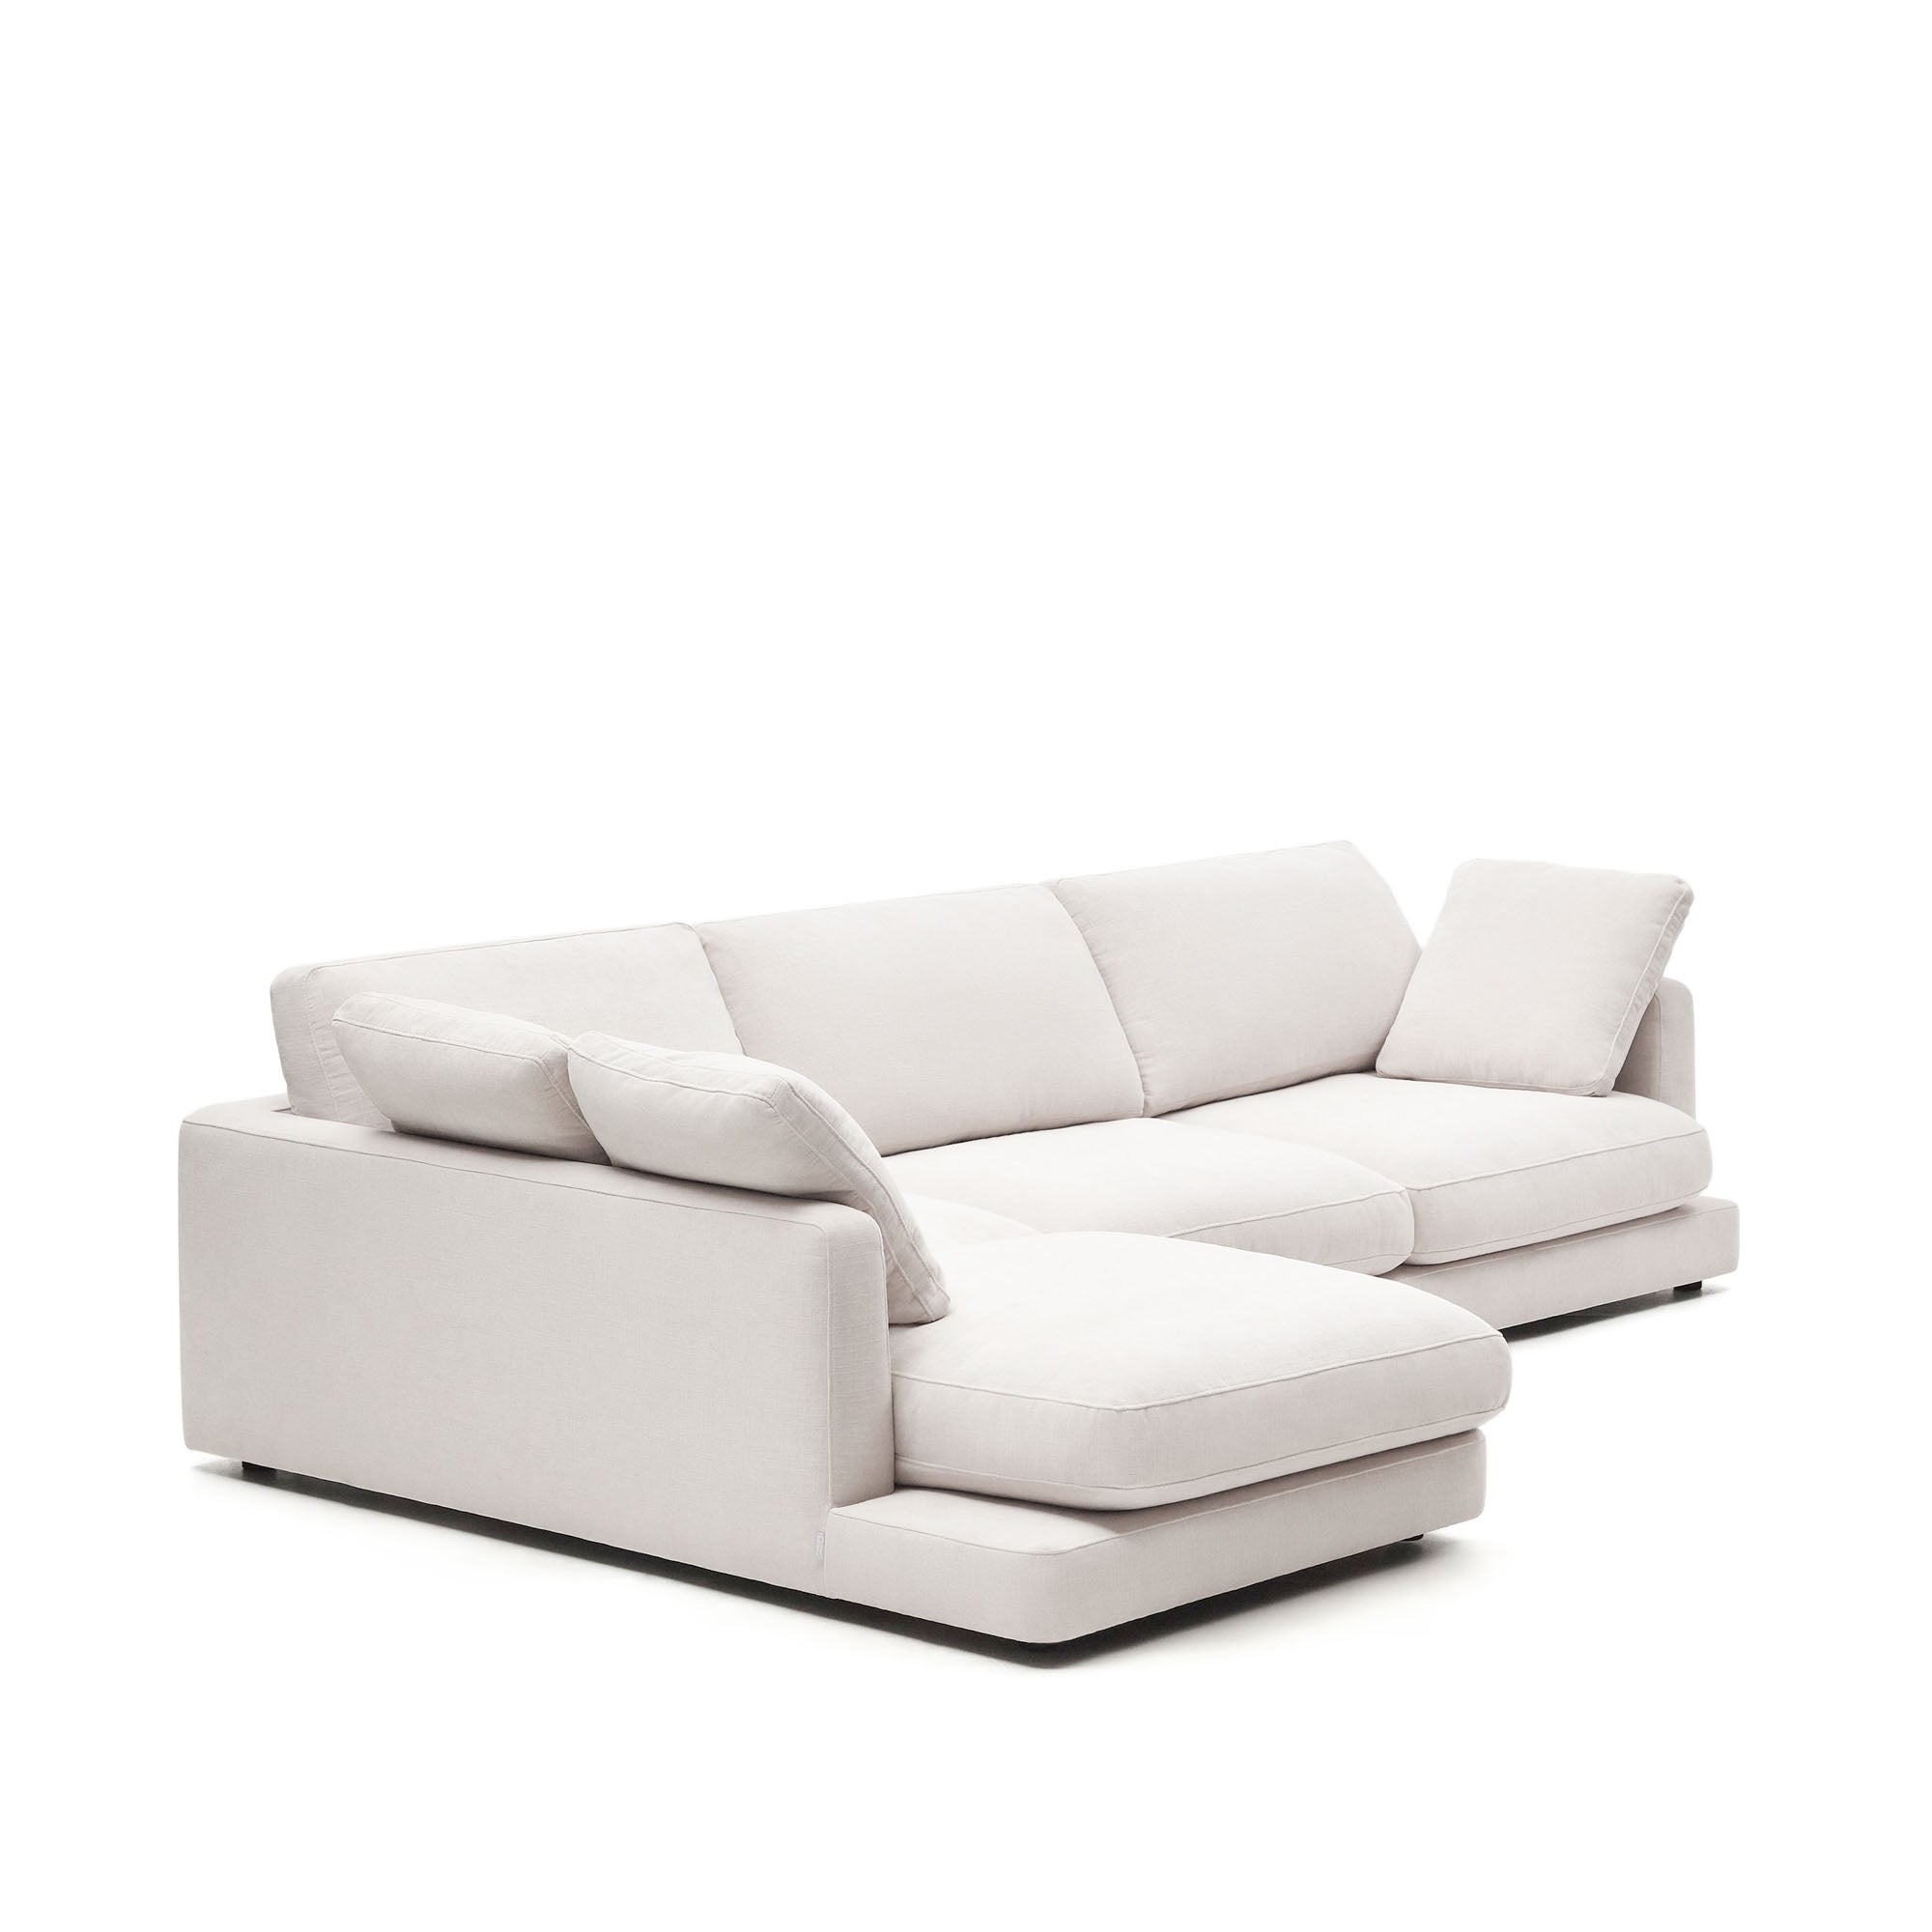 Gala 4 személyes kanapé bal oldali fekvőfotellel, fehér színben, 300 cm